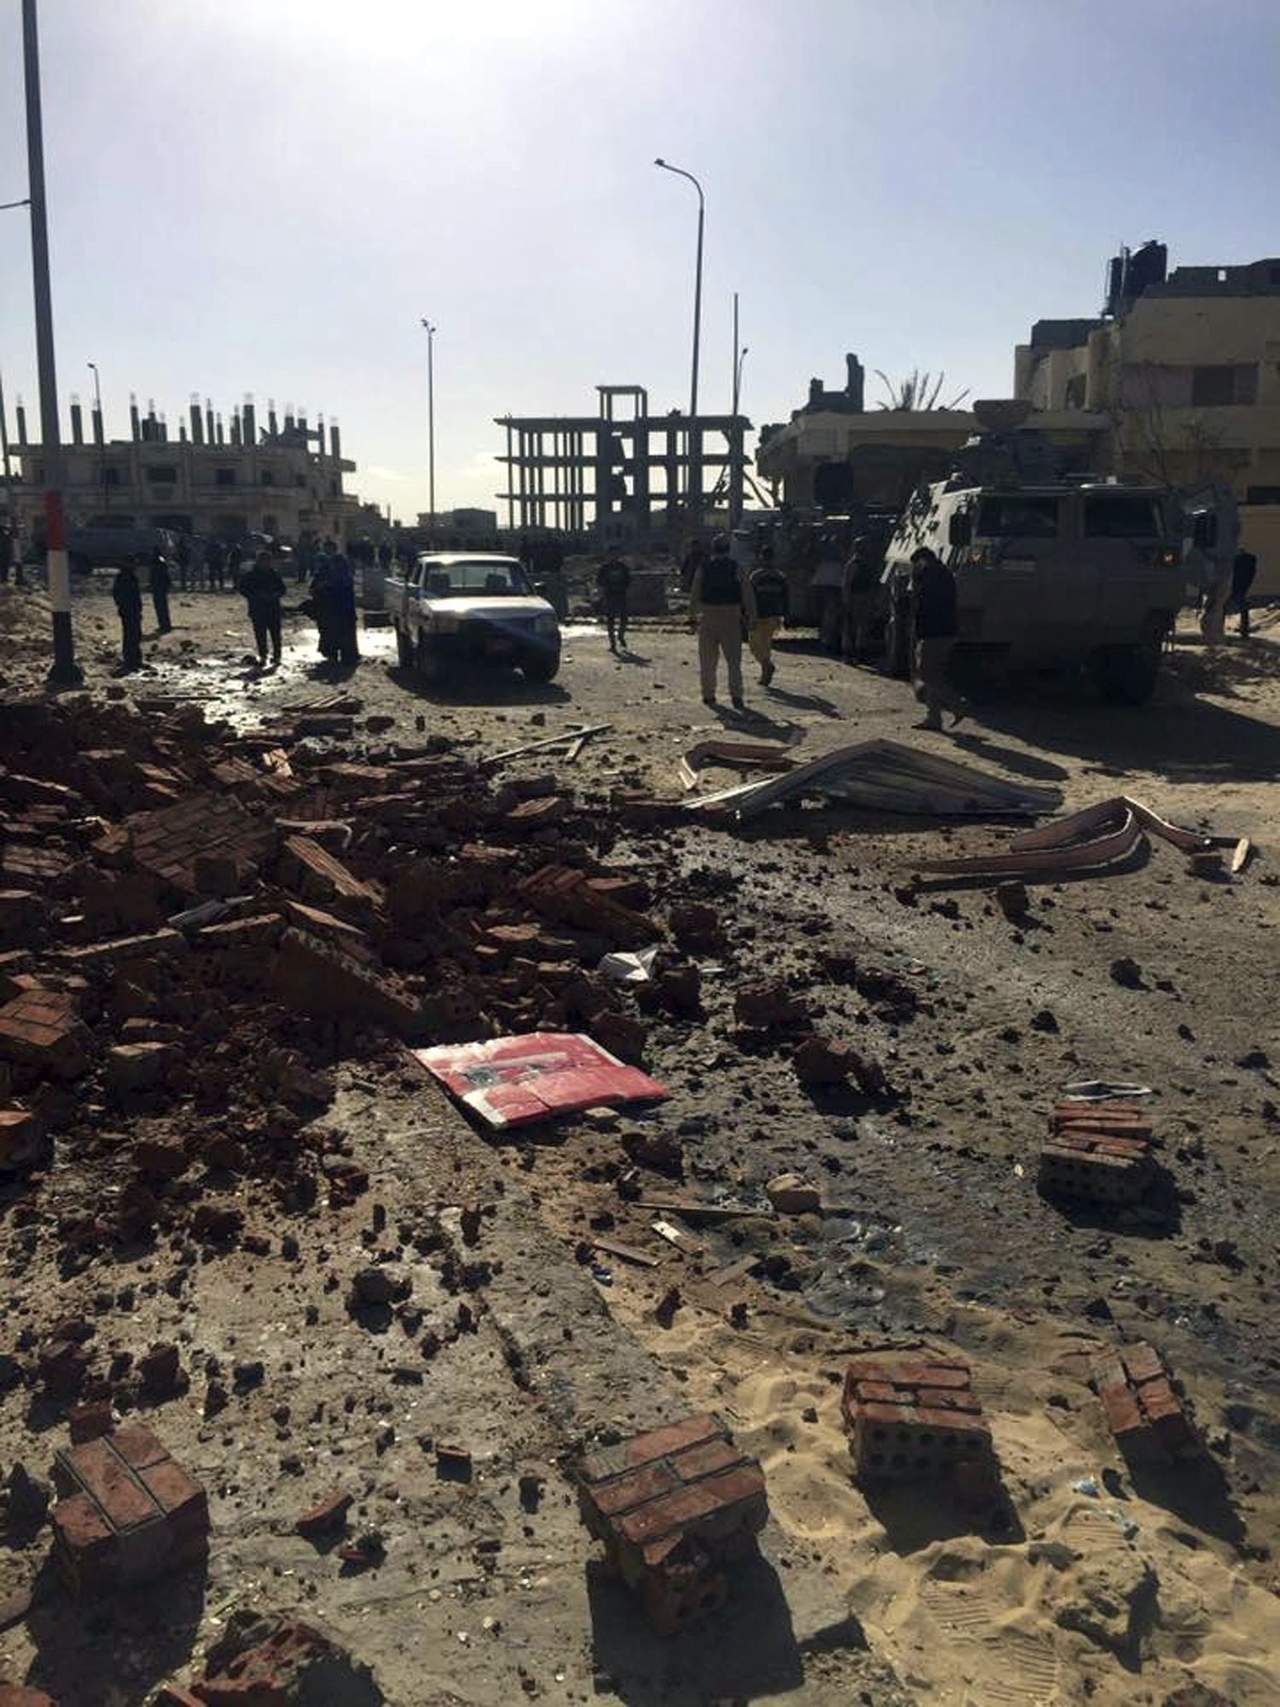 Al menos ocho policías y un civil murieron, mientras que seis policías más e igual número de civiles que se encontraban en los alrededores resultaron heridos en la agresión, según un reporte del sitio de noticias Ahram Online. (EFE)